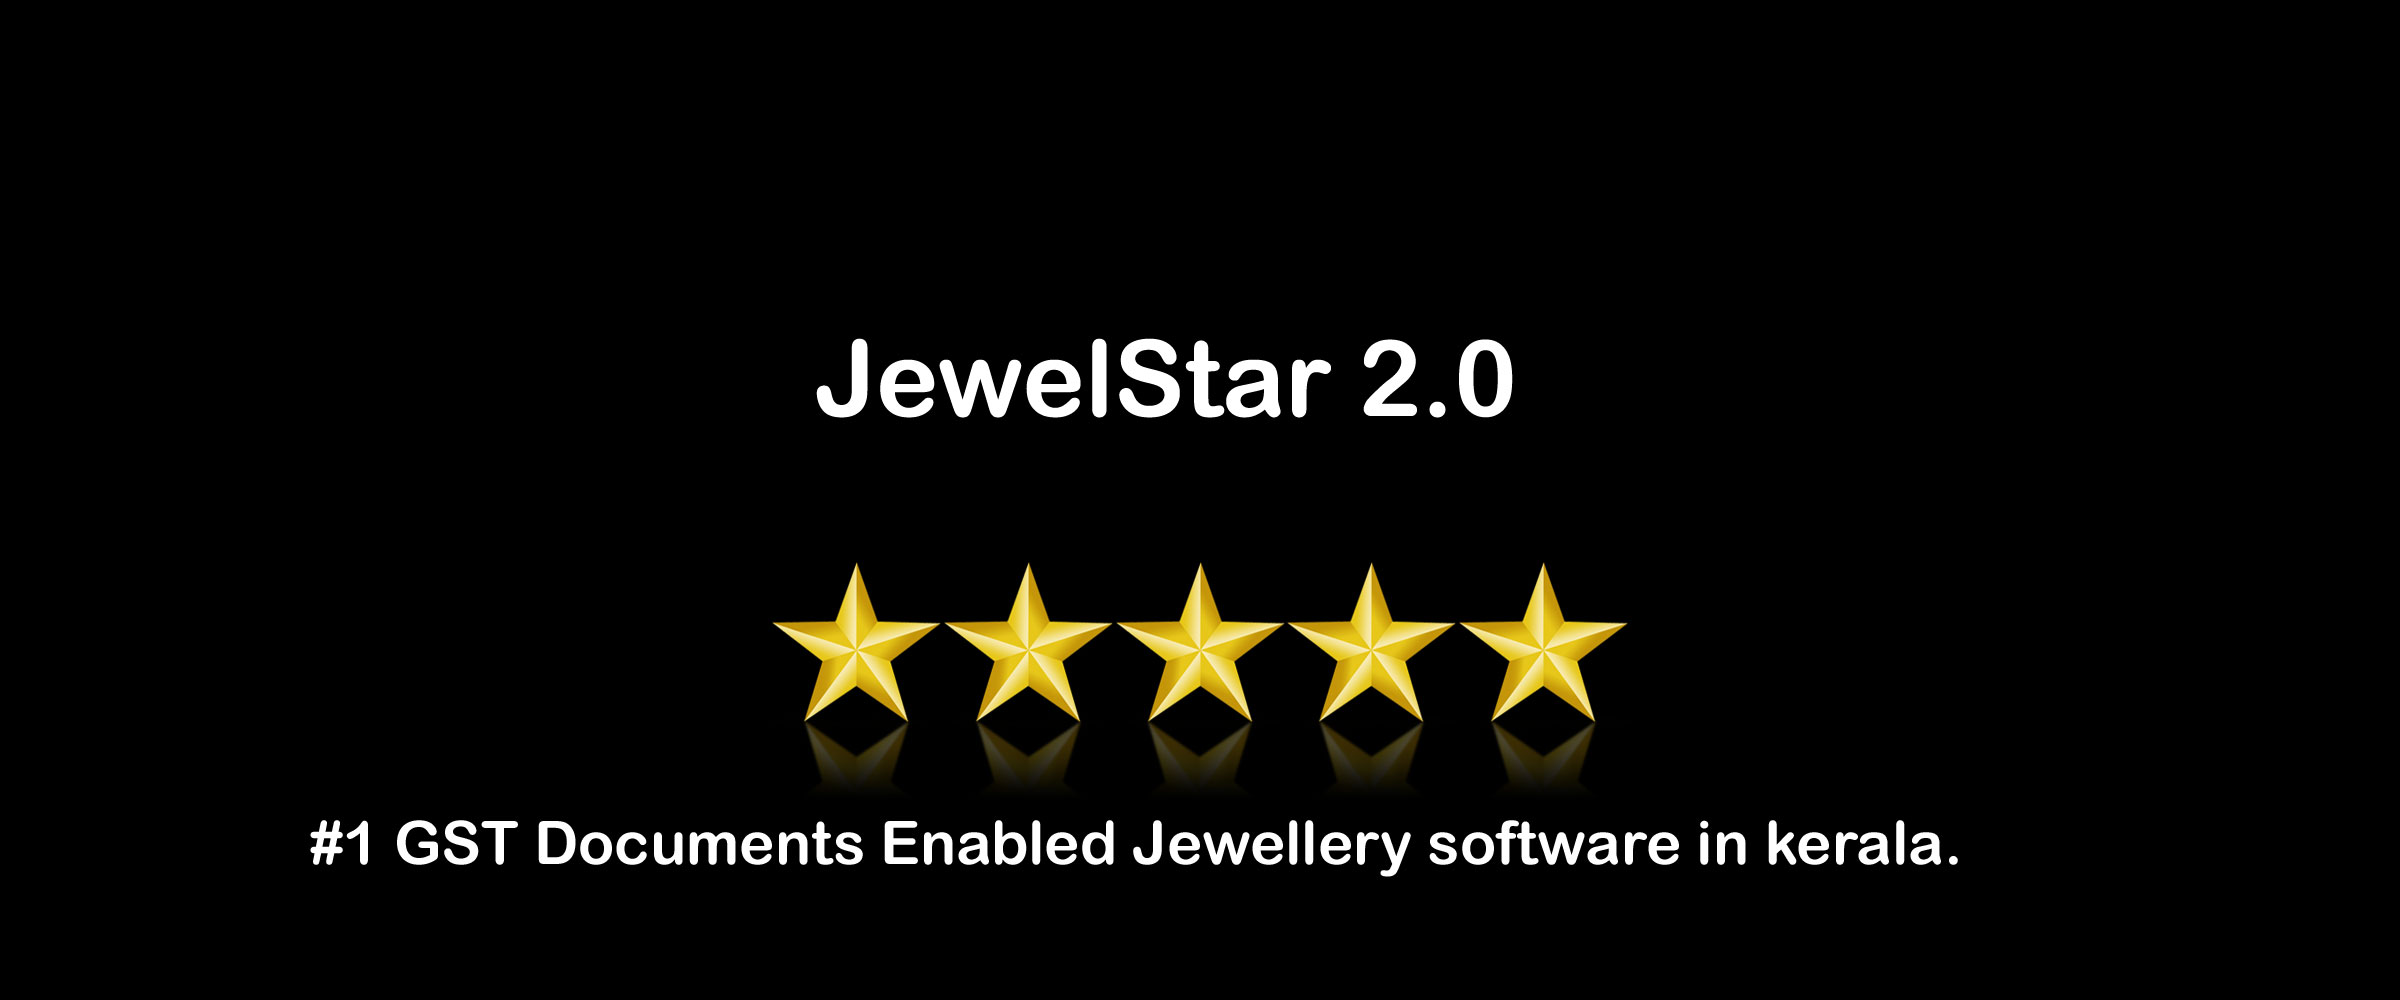 JewelStar 2.0